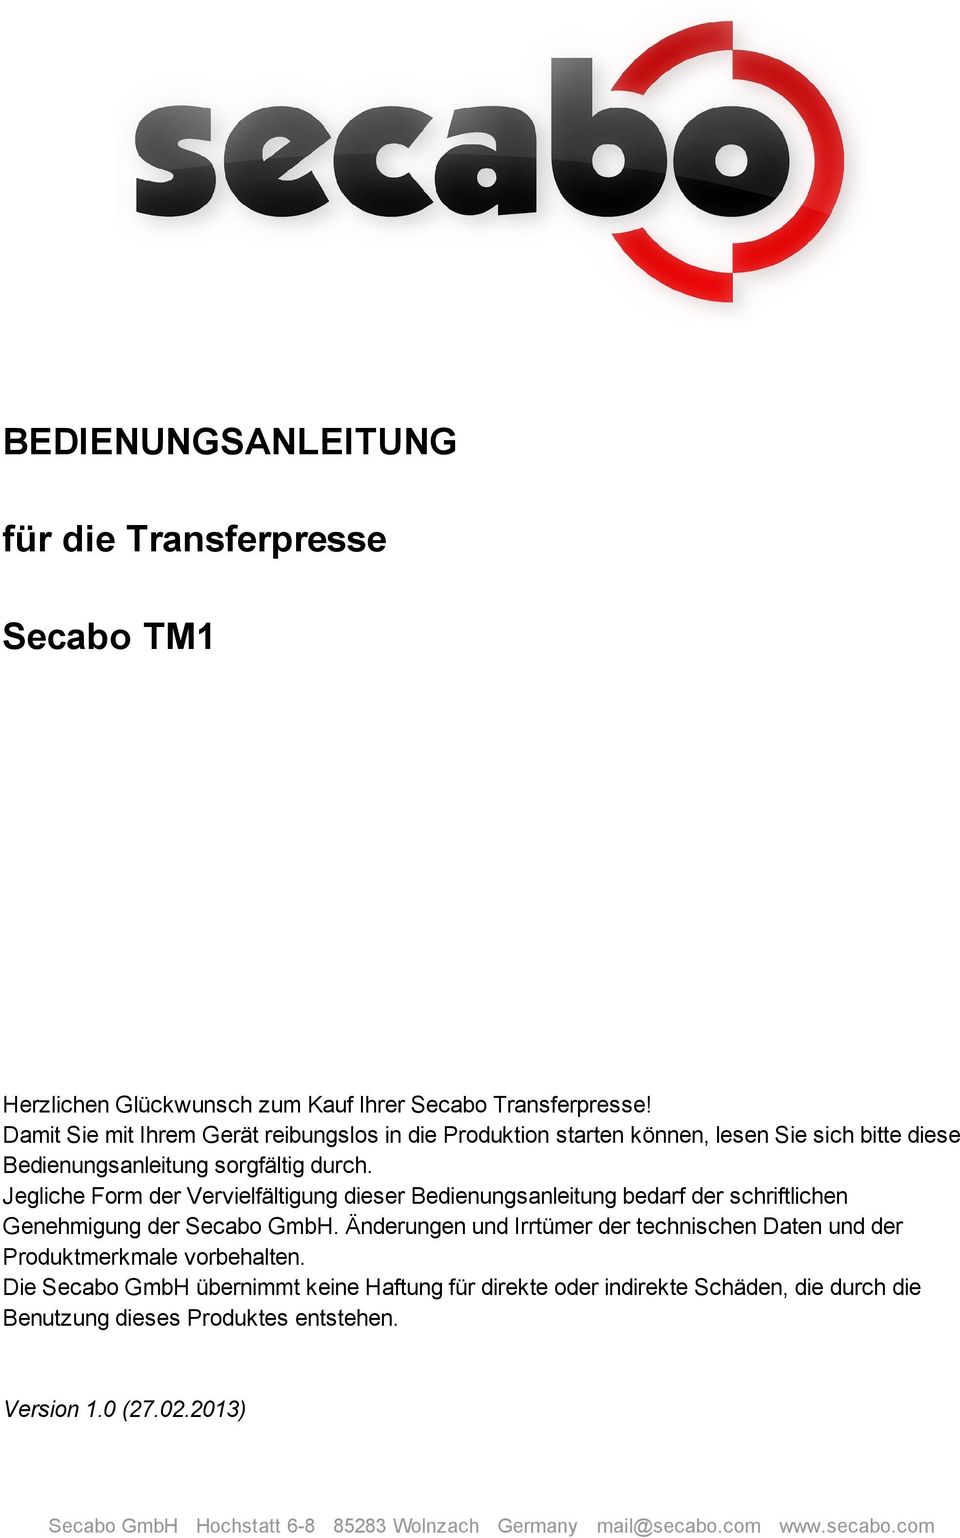 Jegliche Form der Vervielfältigung dieser Bedienungsanleitung bedarf der schriftlichen Genehmigung der Secabo GmbH.